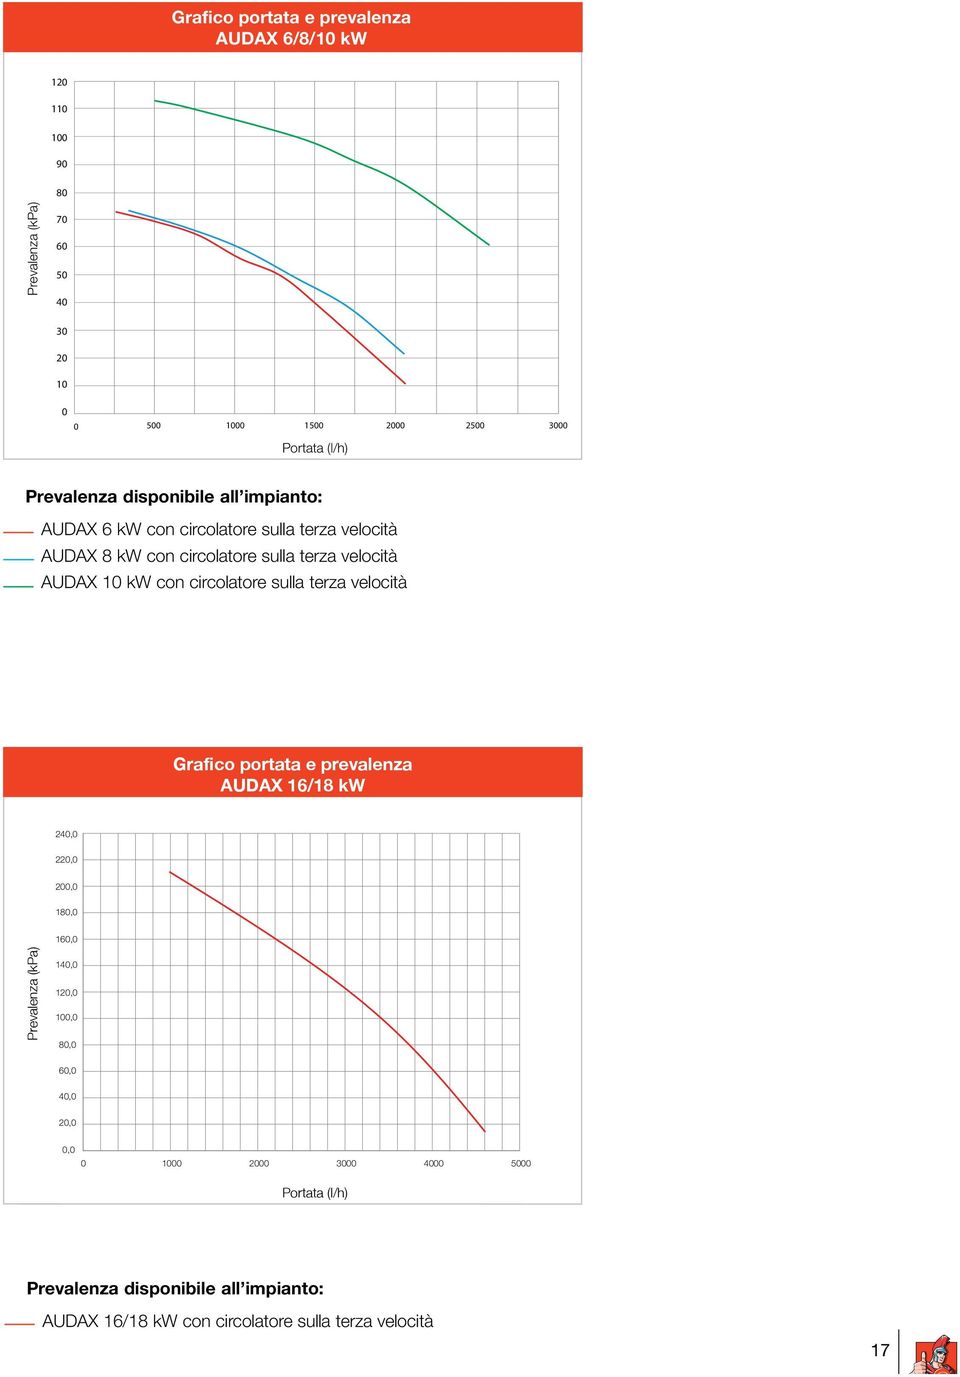 AUDAX 10 kw con circolatore sulla terza velocità Grafico portata e prevalenza AUDAX 16/18 kw 240,0 220,0 200,0 180,0 160,0 Prevalenza (kpa) 140,0 120,0